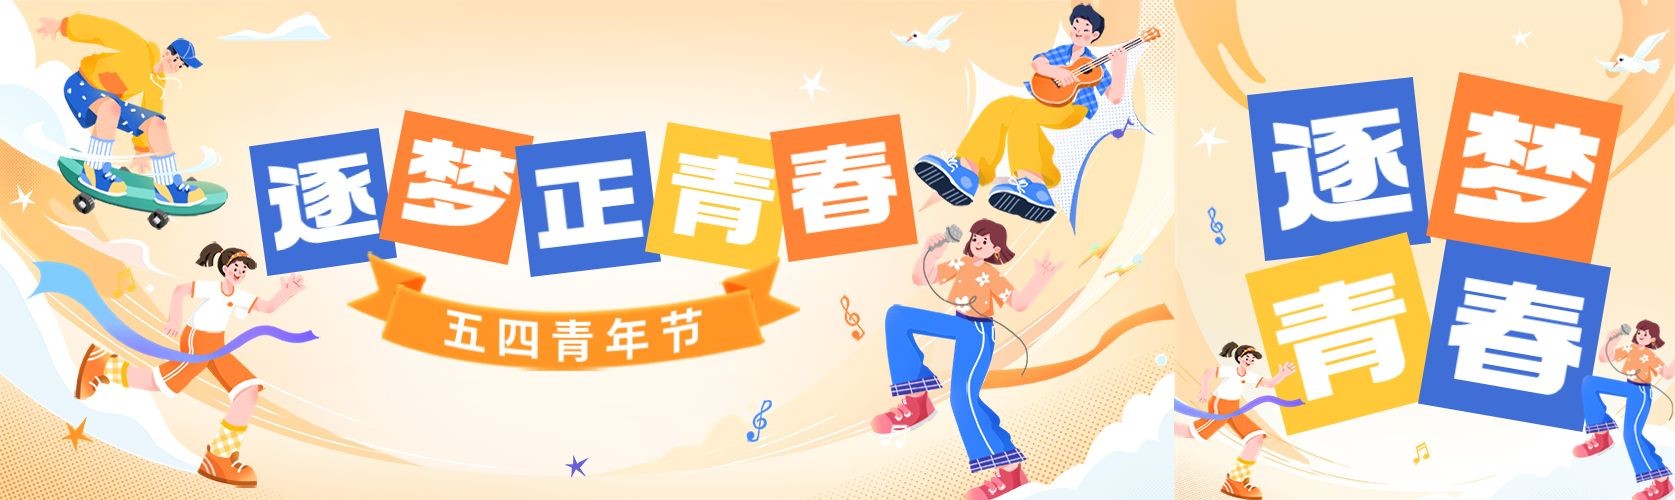 五四青年节节日祝福手绘插画公众号首次图